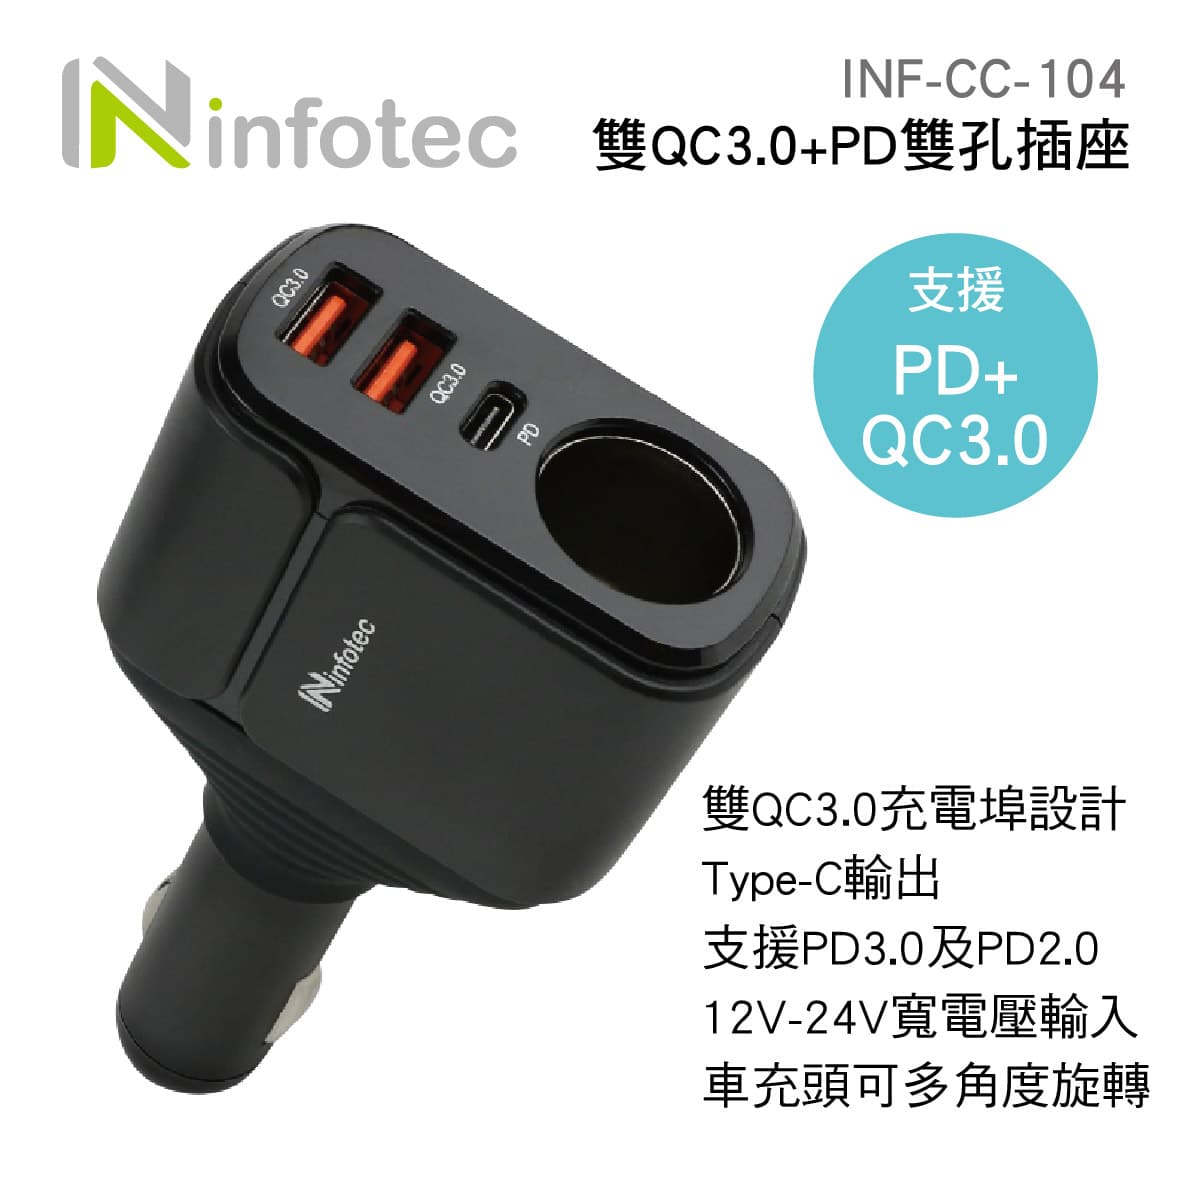 真便宜 infotec INF-CC-104 雙QC3.0+PD雙孔插座